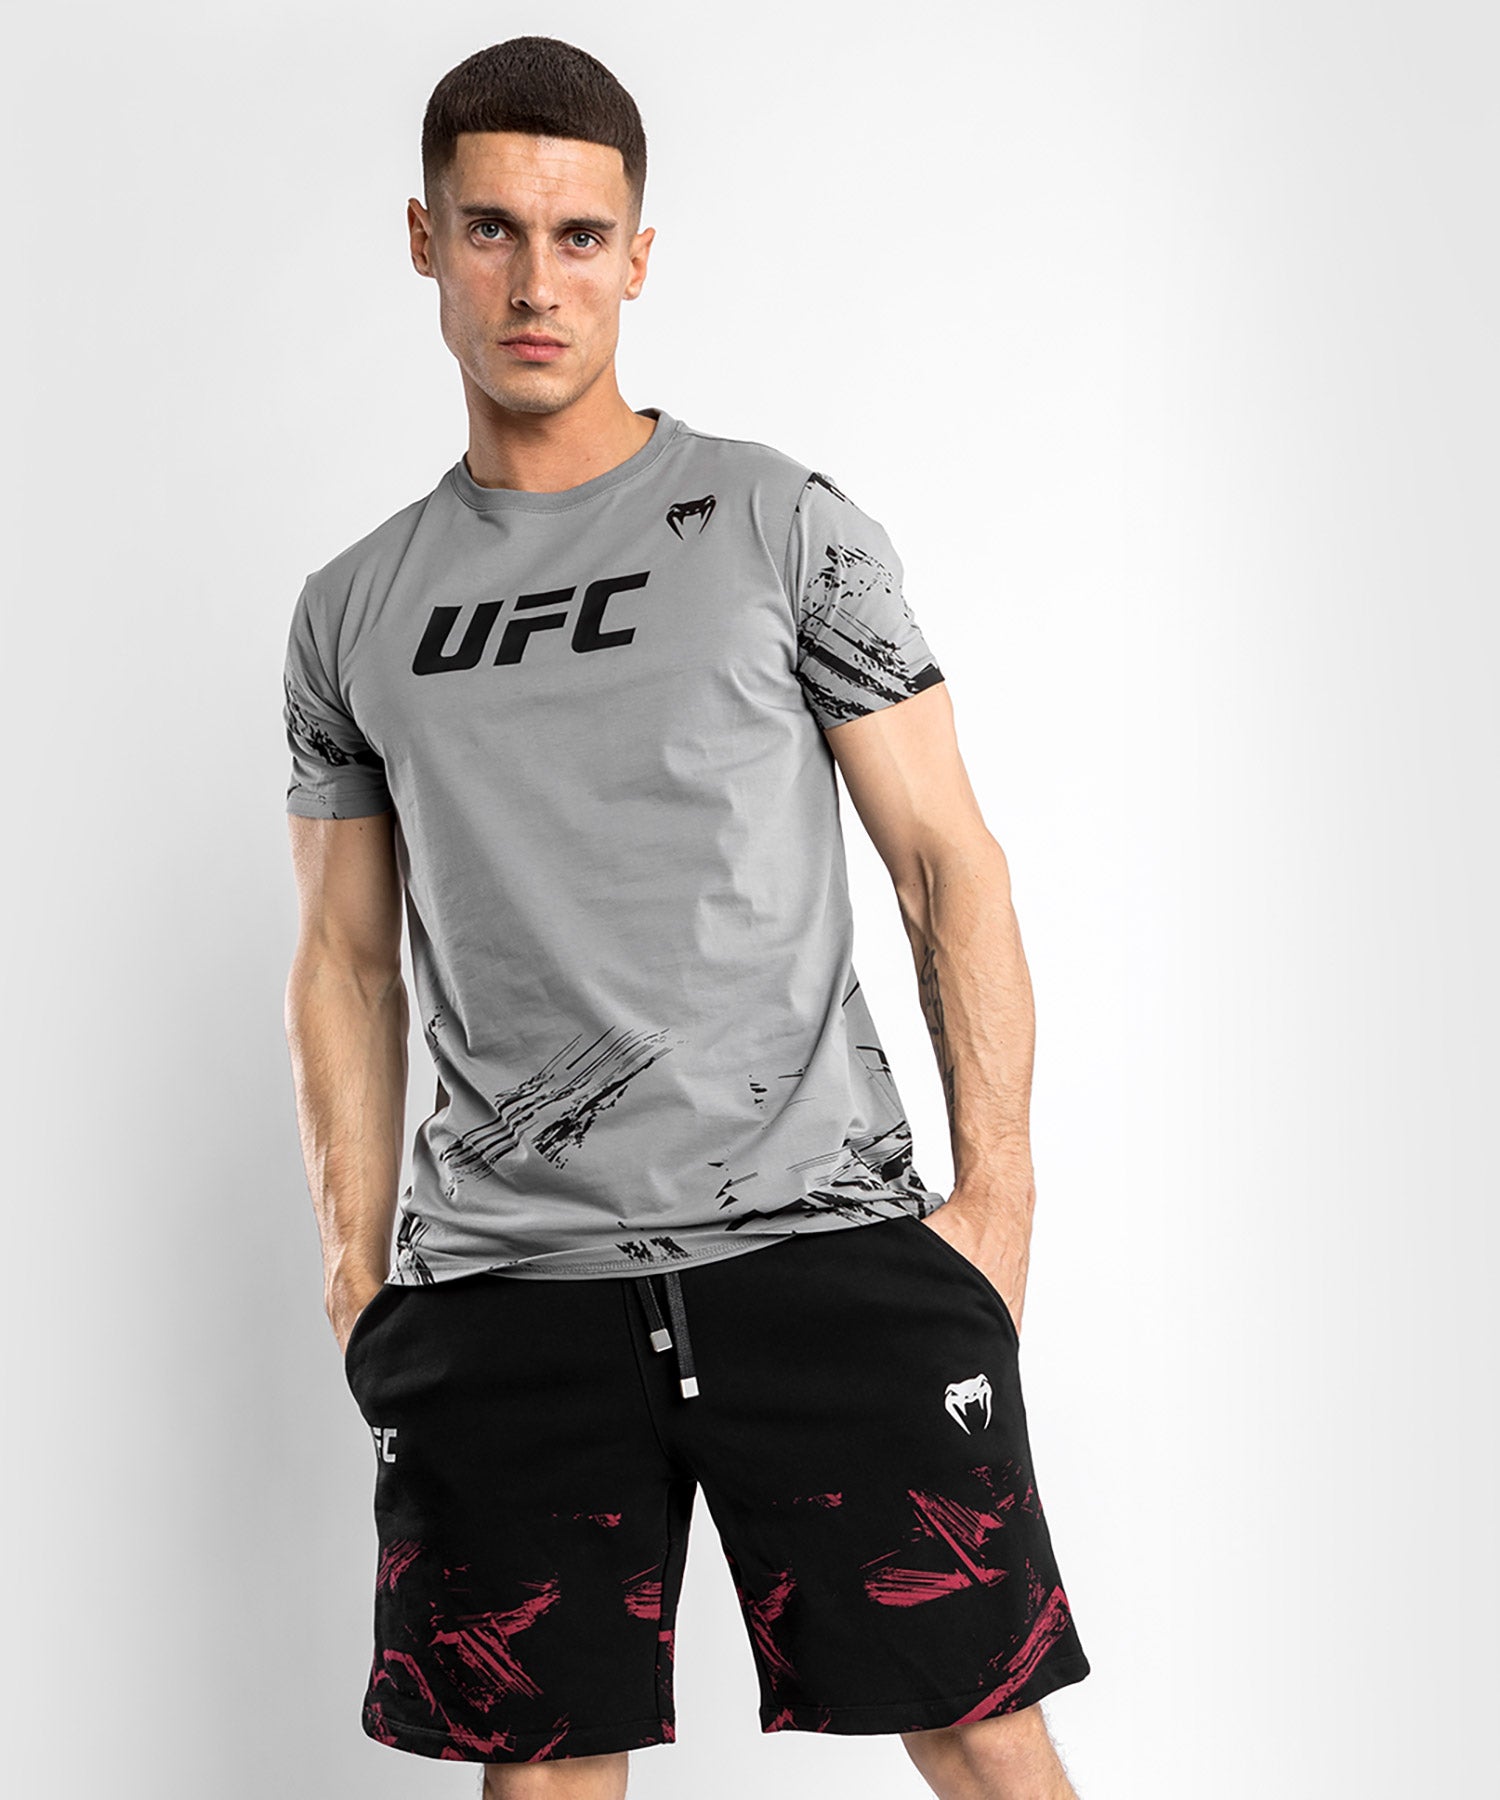 New Men's & Womens REEBOK UFC Official Fighter Kit Jersey Shirt - All Sizes